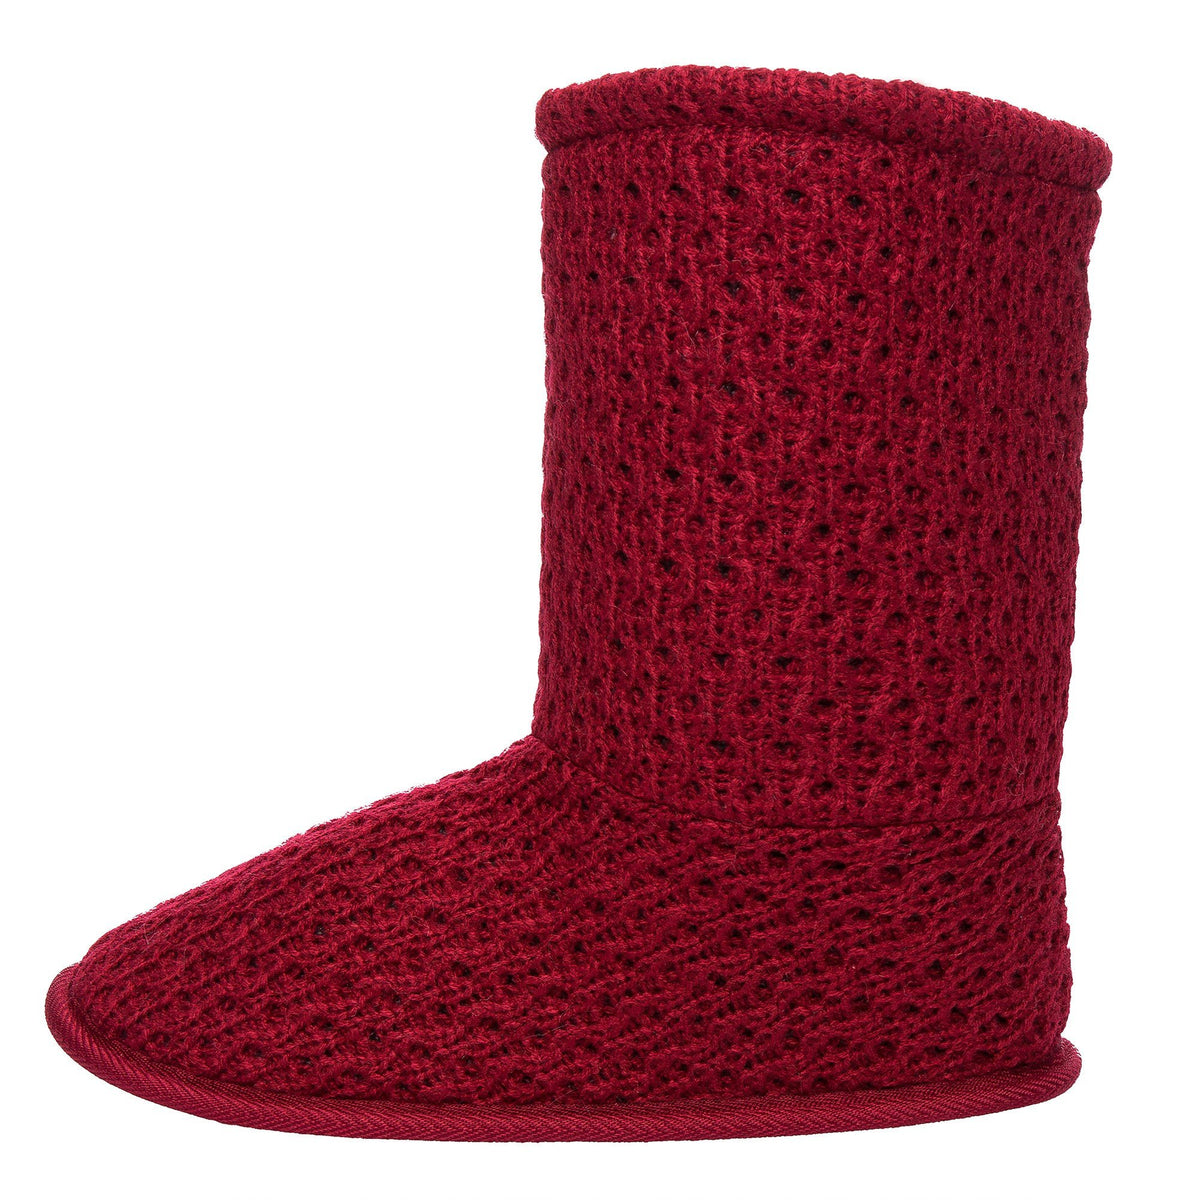 Women's Cozy Crochet Boot Slipper - Burgundy